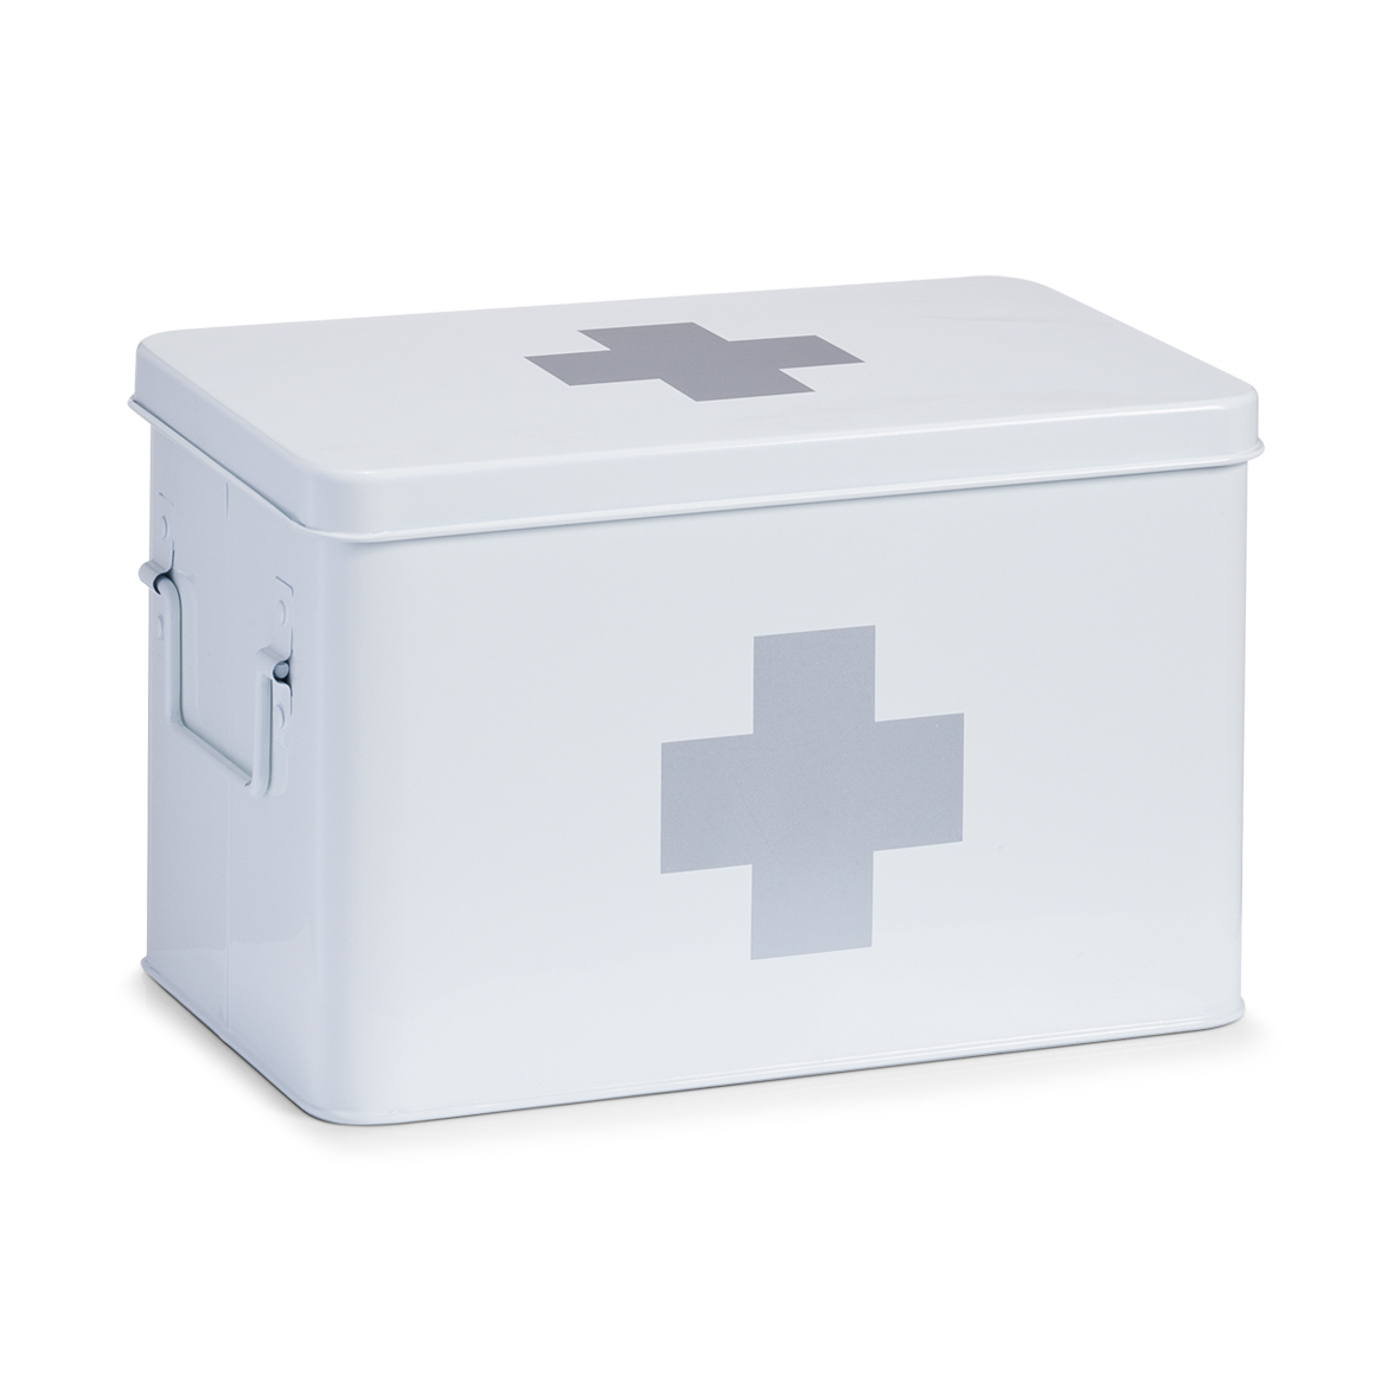 Zeller MEDIZIN-BOX Metall, Farbe: weiß, Grösse: 32 x 19,5 x 20 cm, mit seitlichen Tragegriffen,